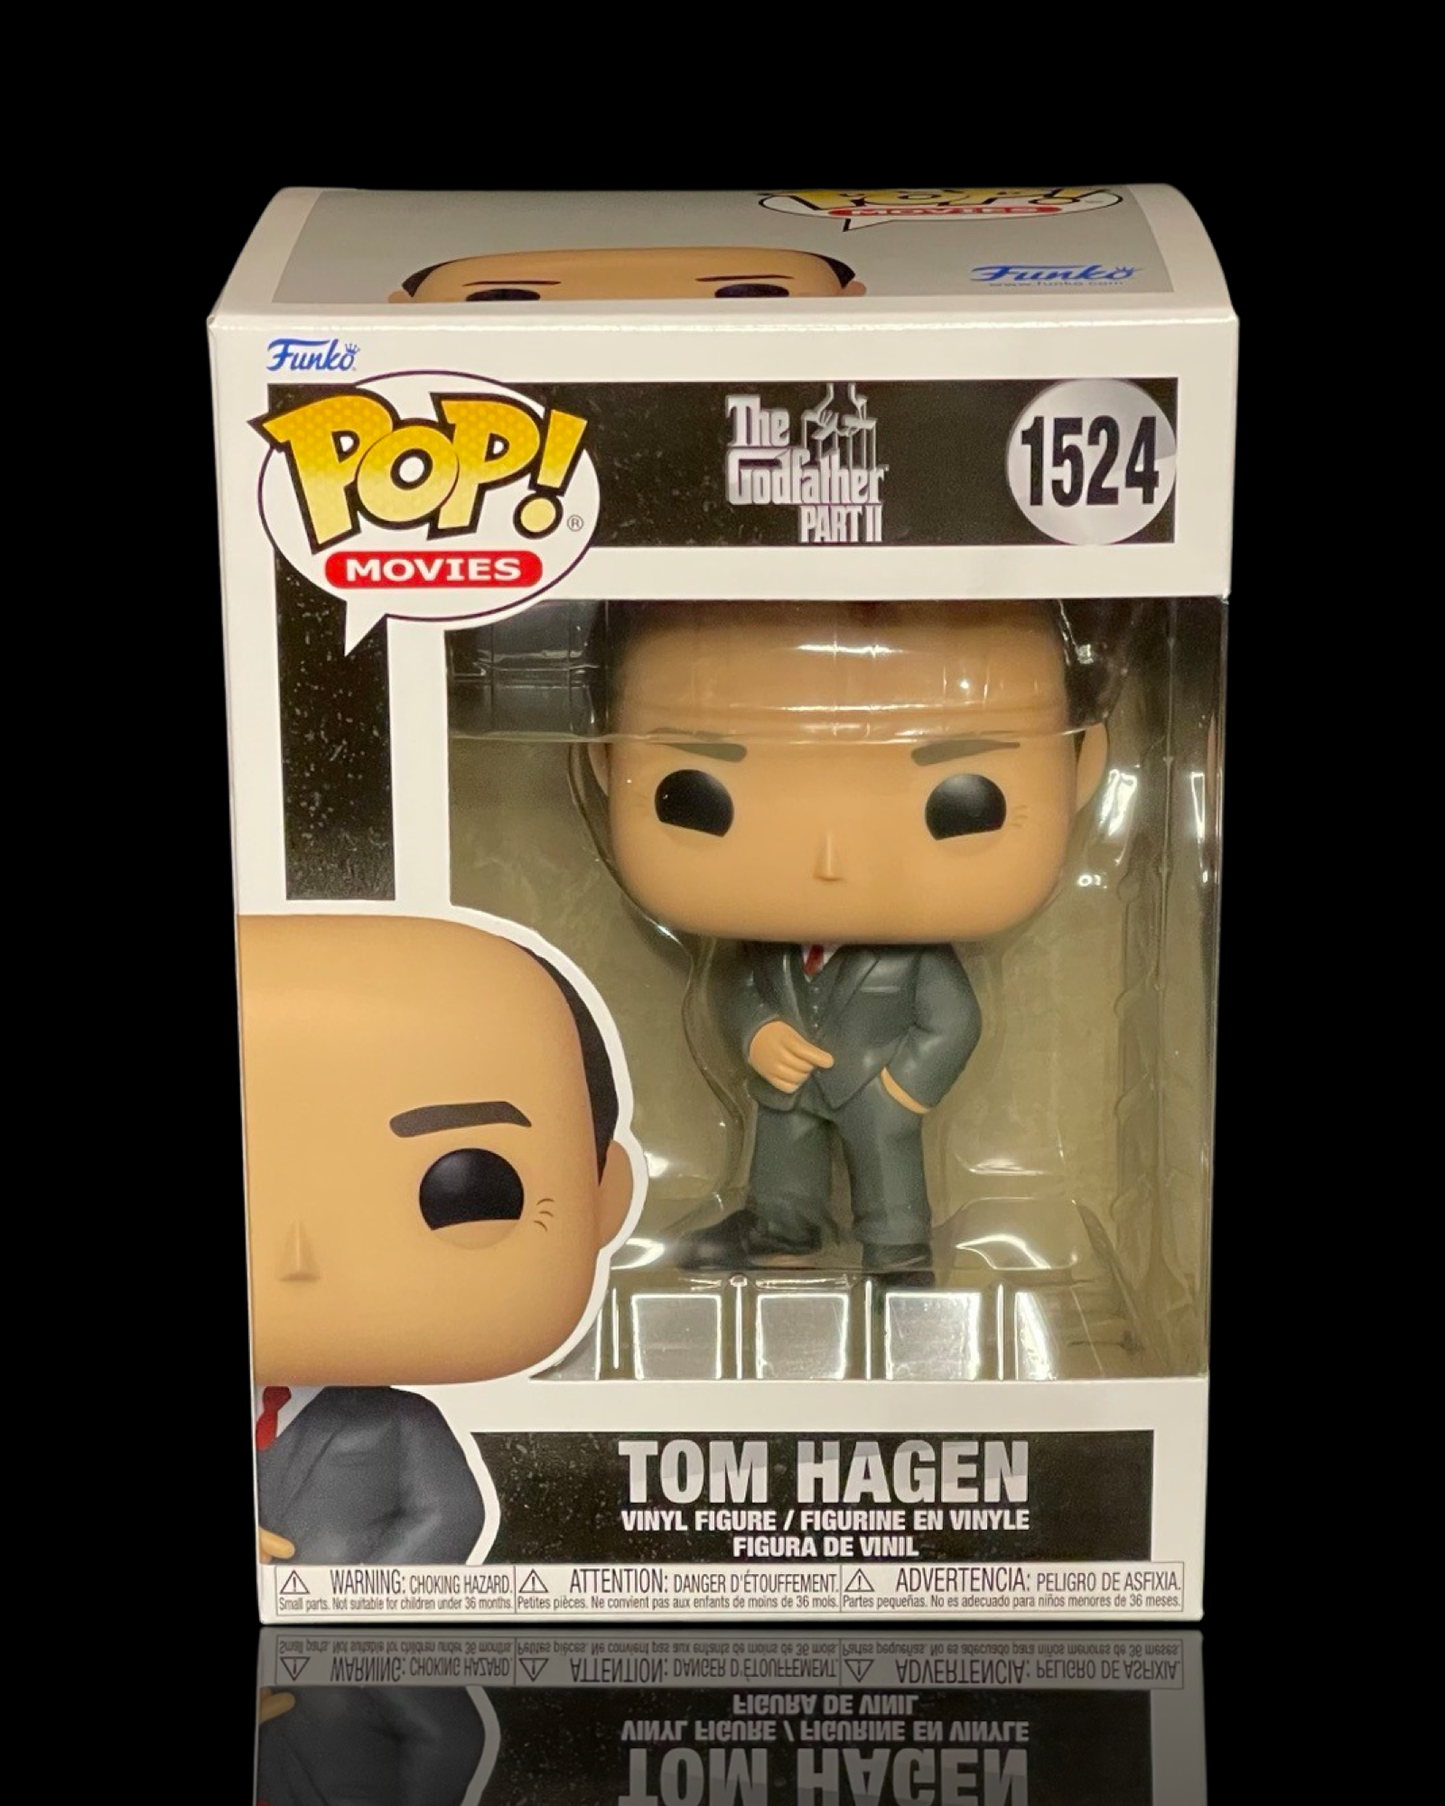 The Godfather Part II: Tom Hagen